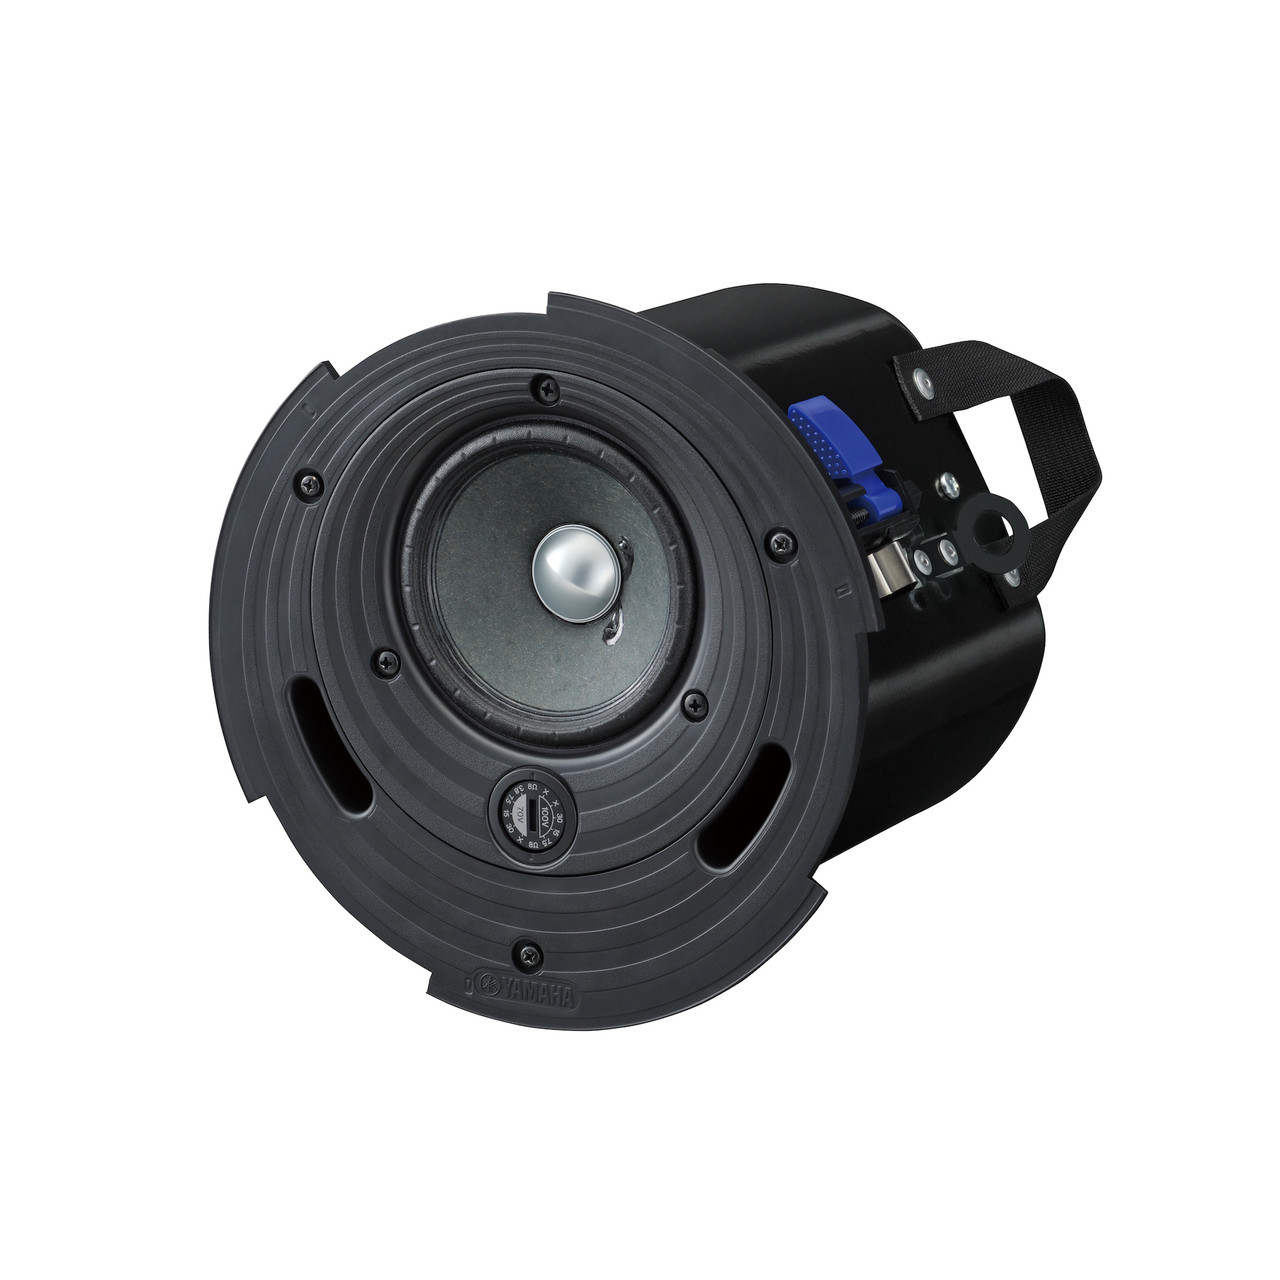 Yamaha VXC4 4" 70/100V Full Range In-Ceiling Speakers (Pair)